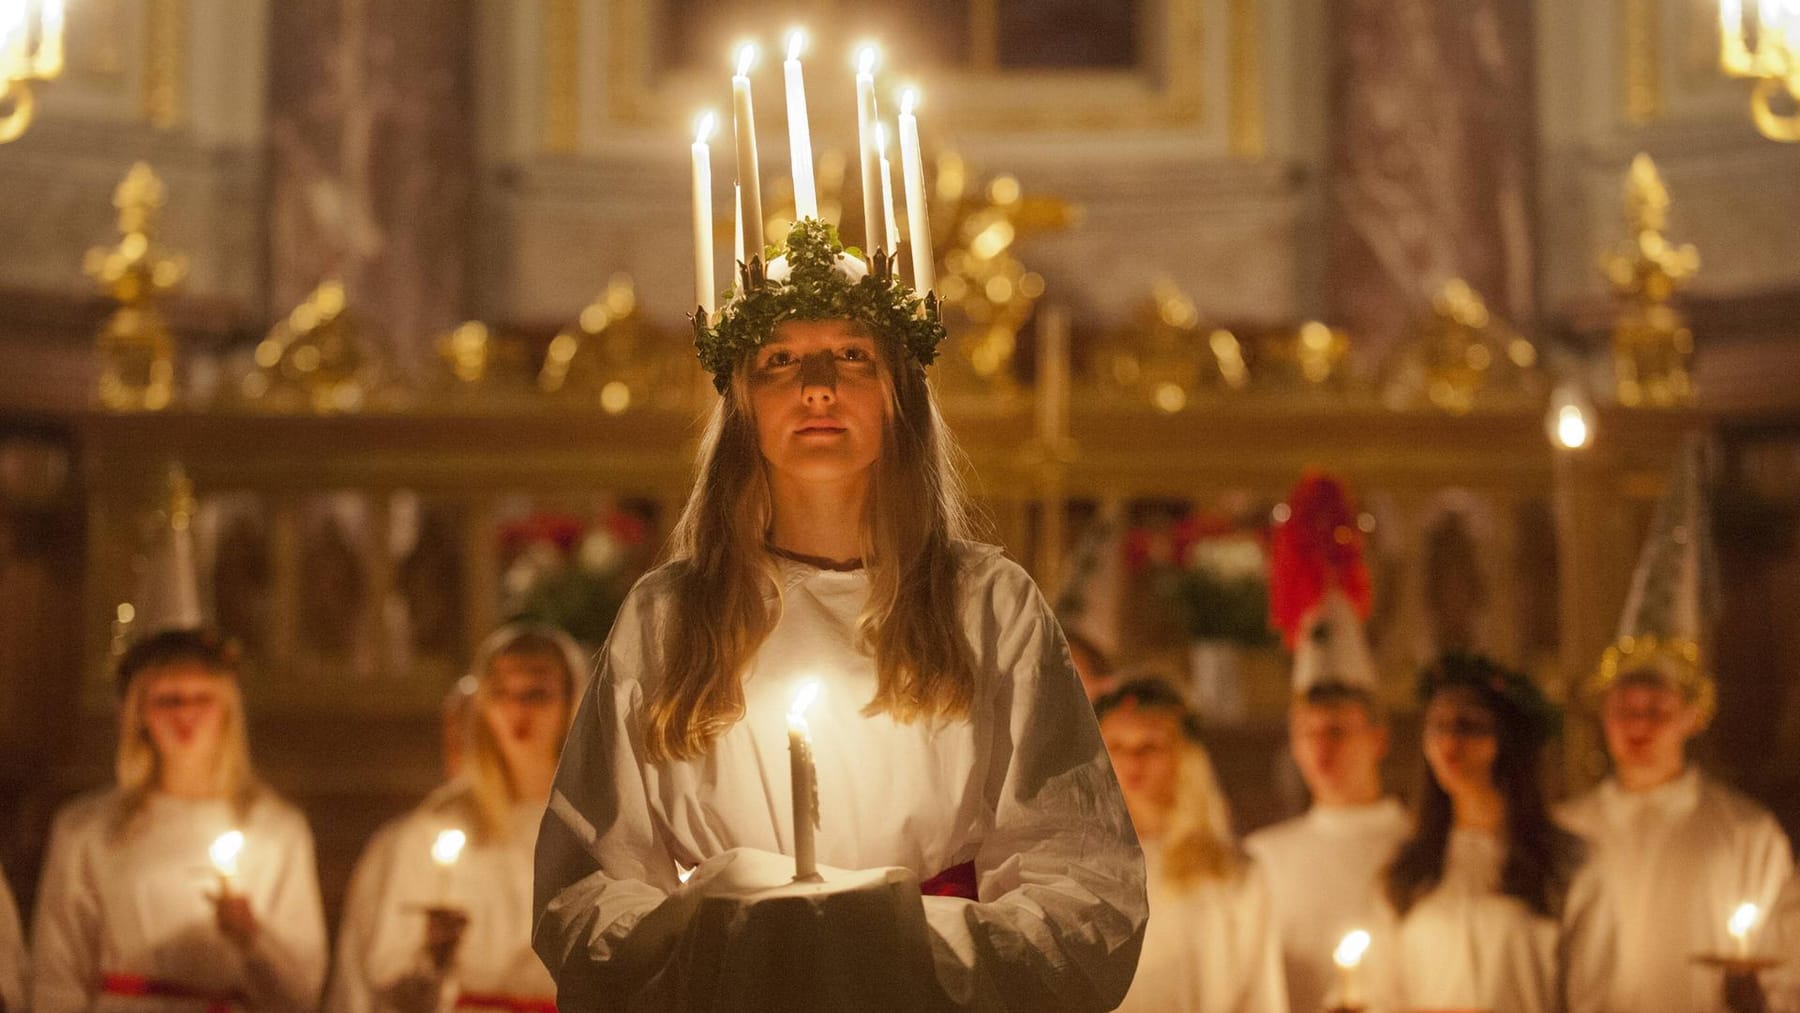 Luciafest Am 13 Dezember Bedeutung And Tradition Des Schwedischen